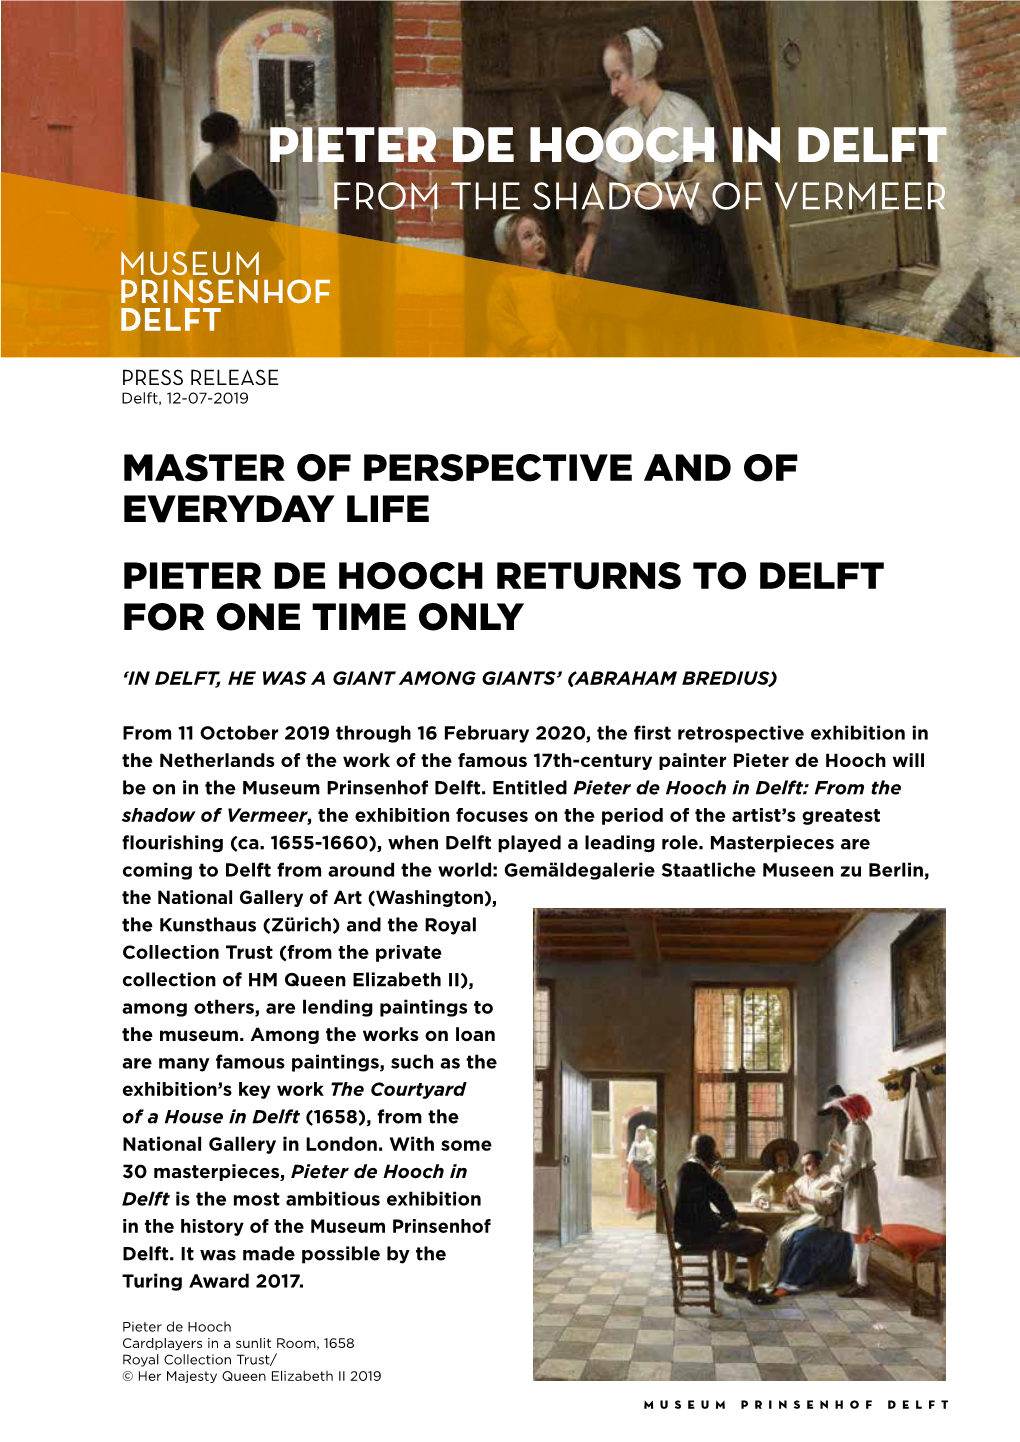 Pieter De Hooch in Delft from the SHADOW of VERMEER